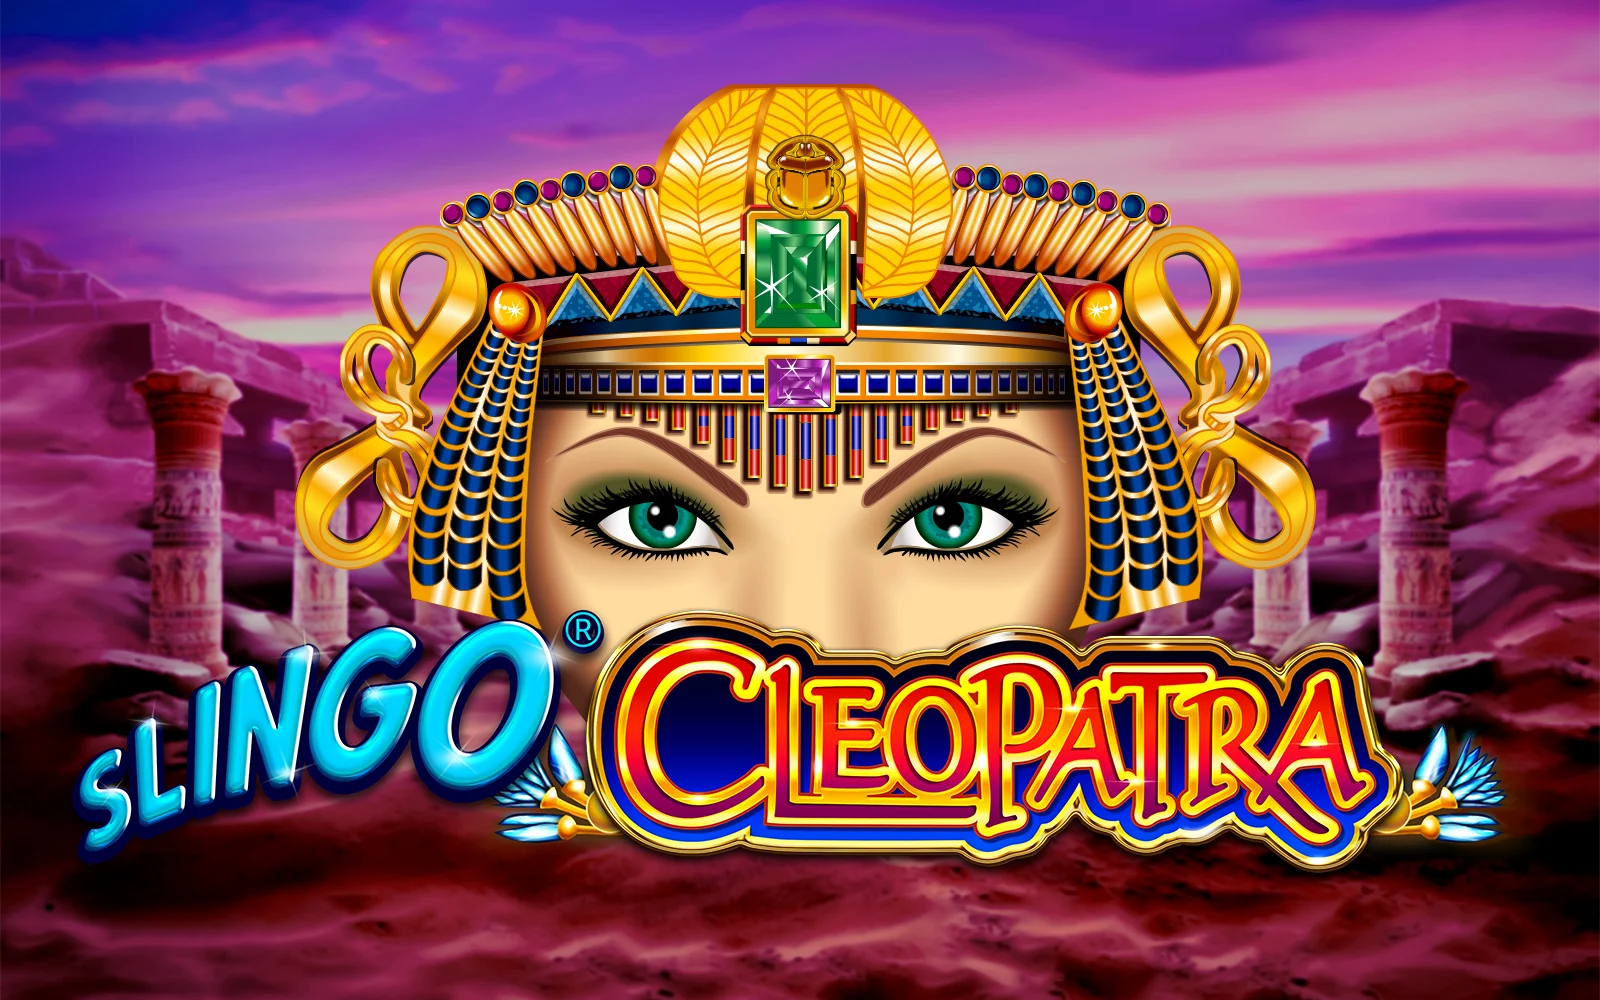 Zagraj w Slingo Cleopatra w kasynie online Starcasino.be